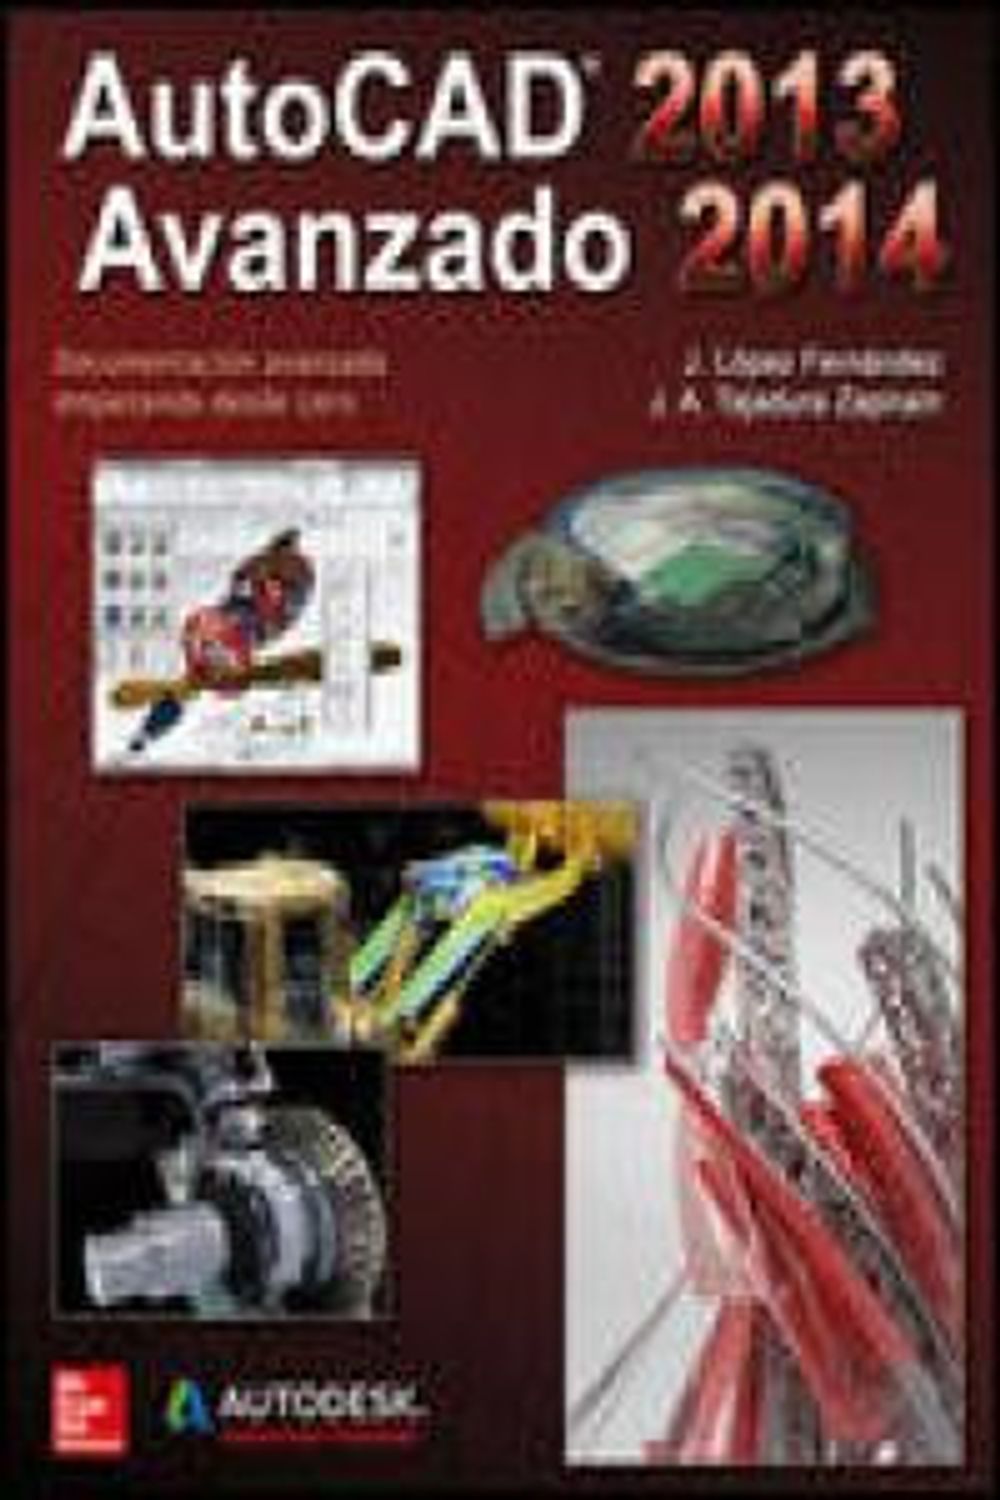 Autocad Avanzado 2013 2014